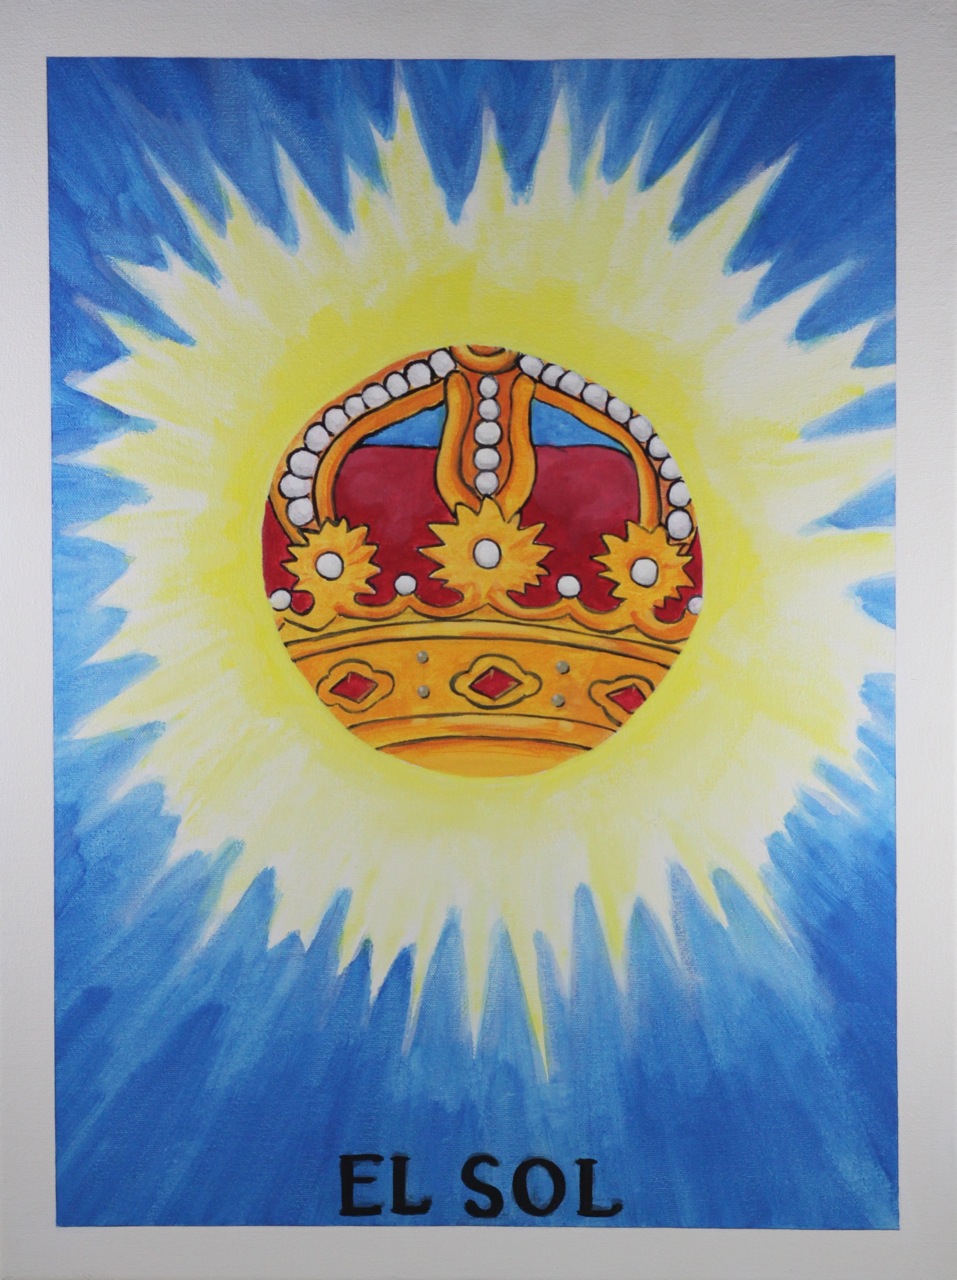 El Sol, Acrylic on canvas, 24" x 18"